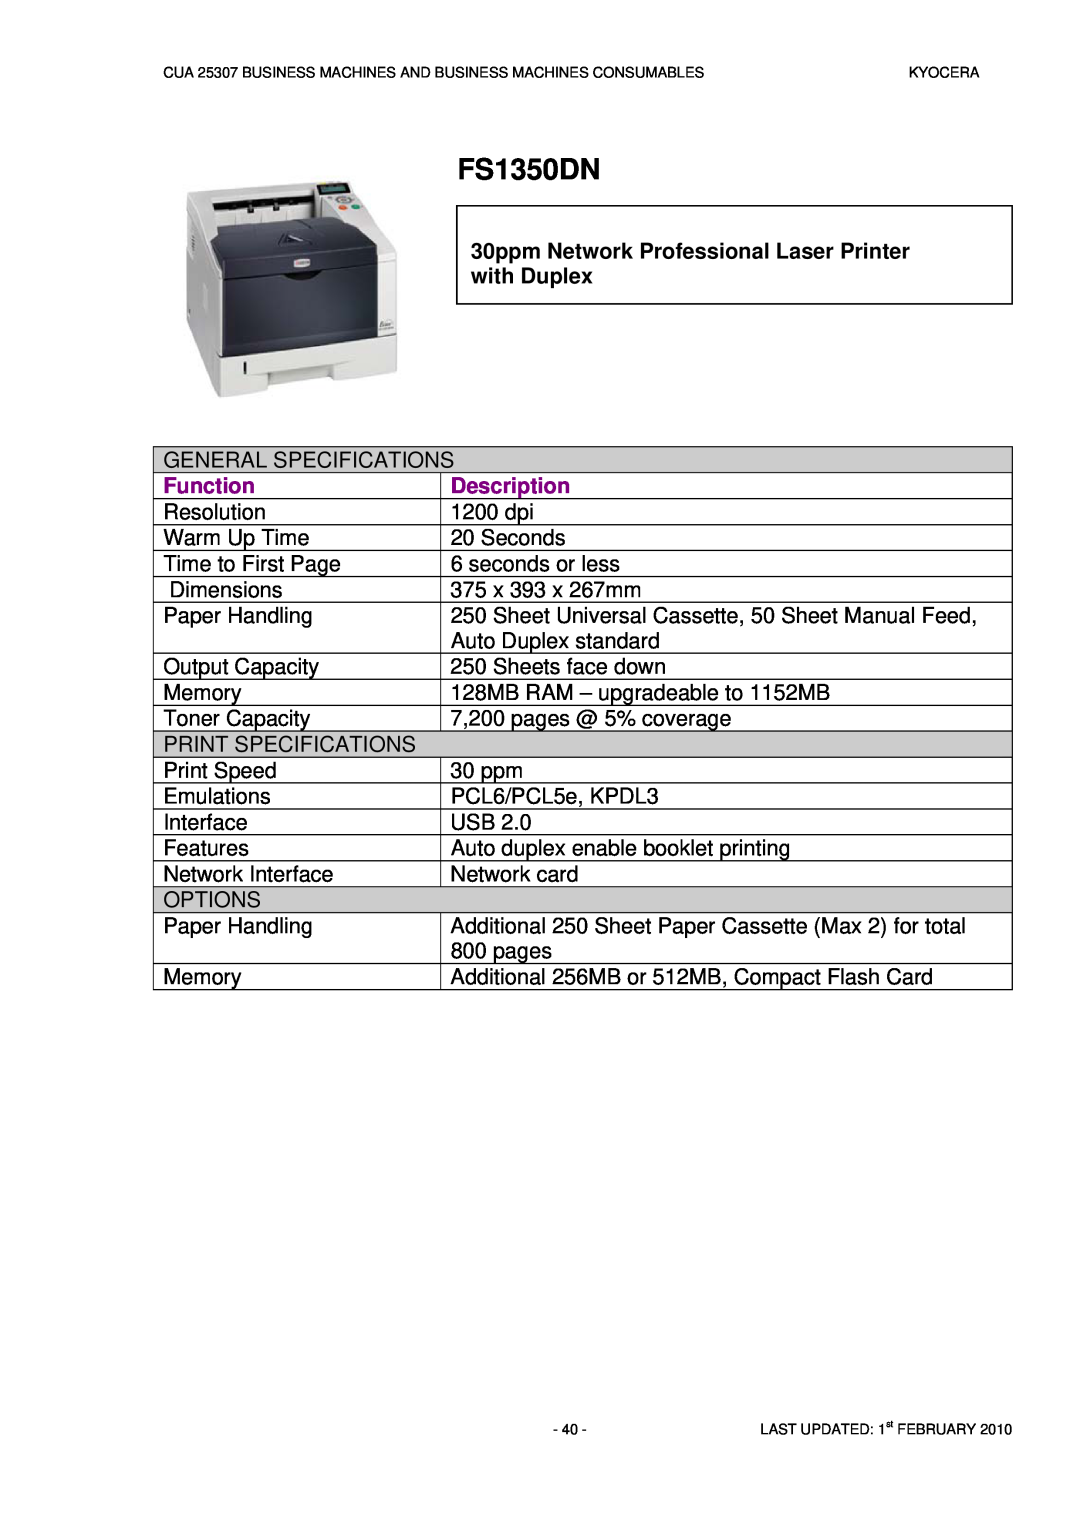 Kyocera CUA 25307 manual FS1350DN, Function, Description 1200 dpi 